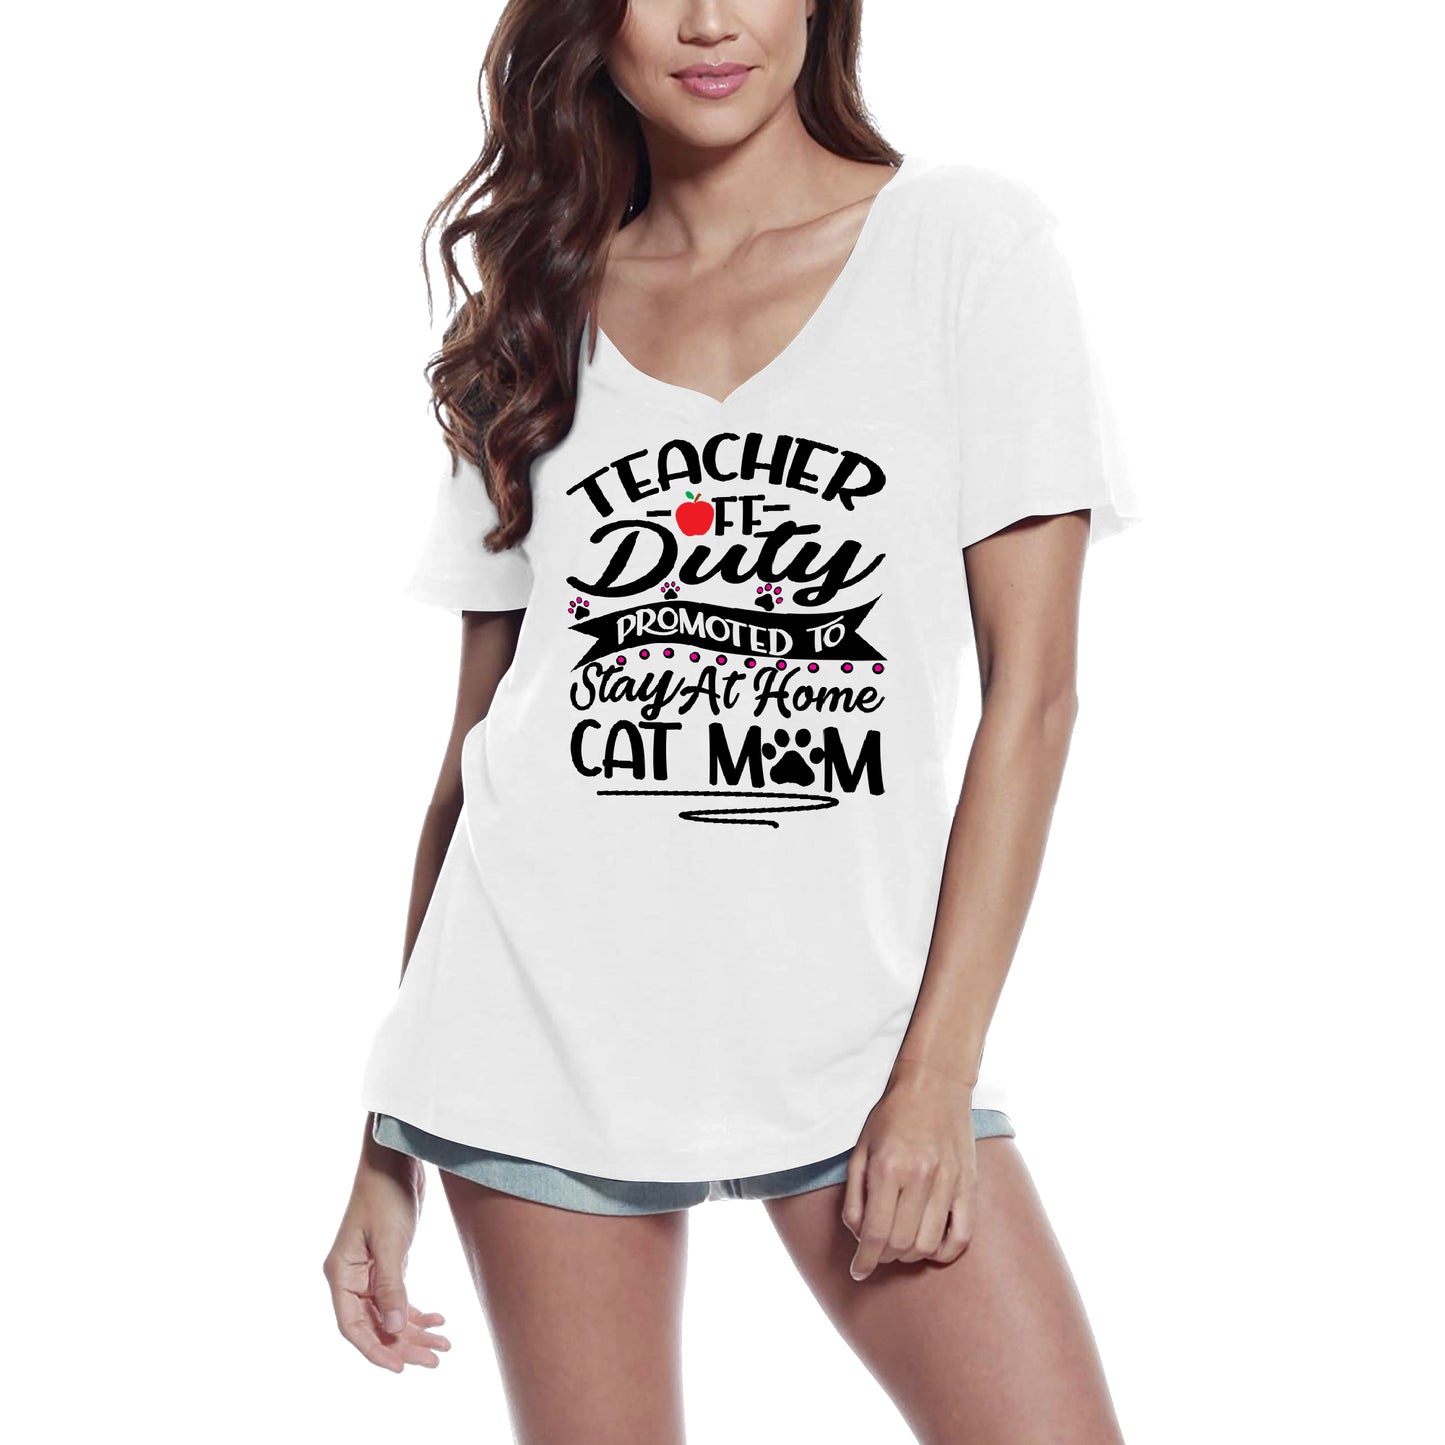 ULTRABASIC Damen-T-Shirt „Cat Mom“ – Lehrerin, die nicht im Dienst ist und zu Hause bleiben soll – lustiges Kätzchen-Shirt für Katzenliebhaber